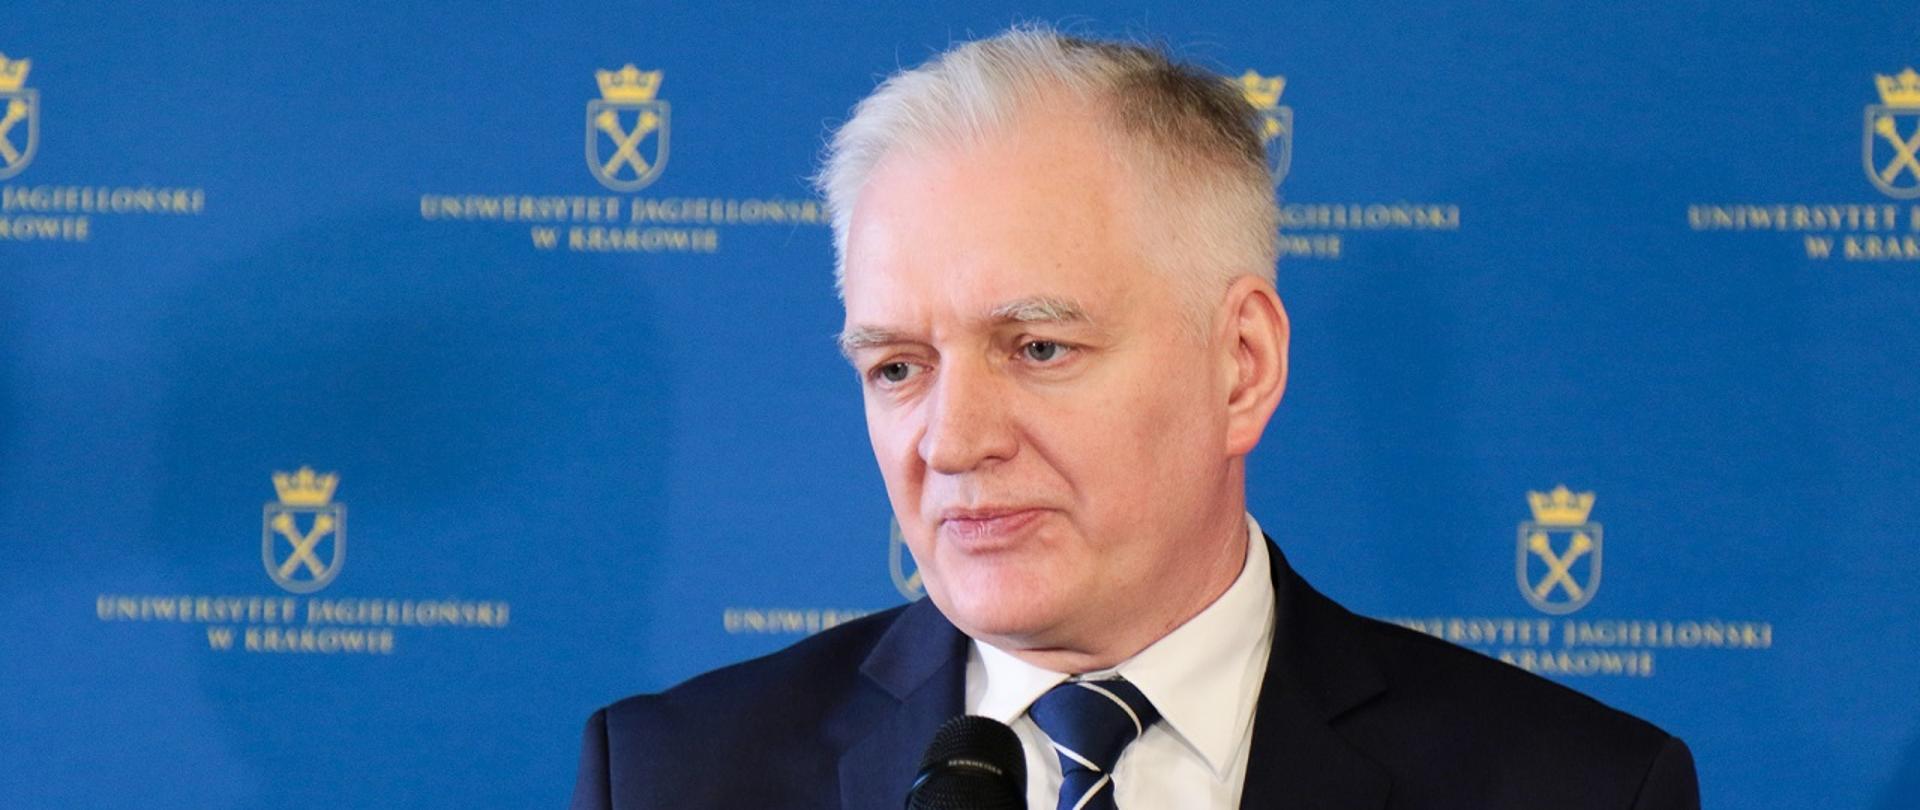 Minister Jarosław Gowin na UJ. Minister przemawia do mikrofonu, za nim niebieska ściana z żółtym logiem UJ.